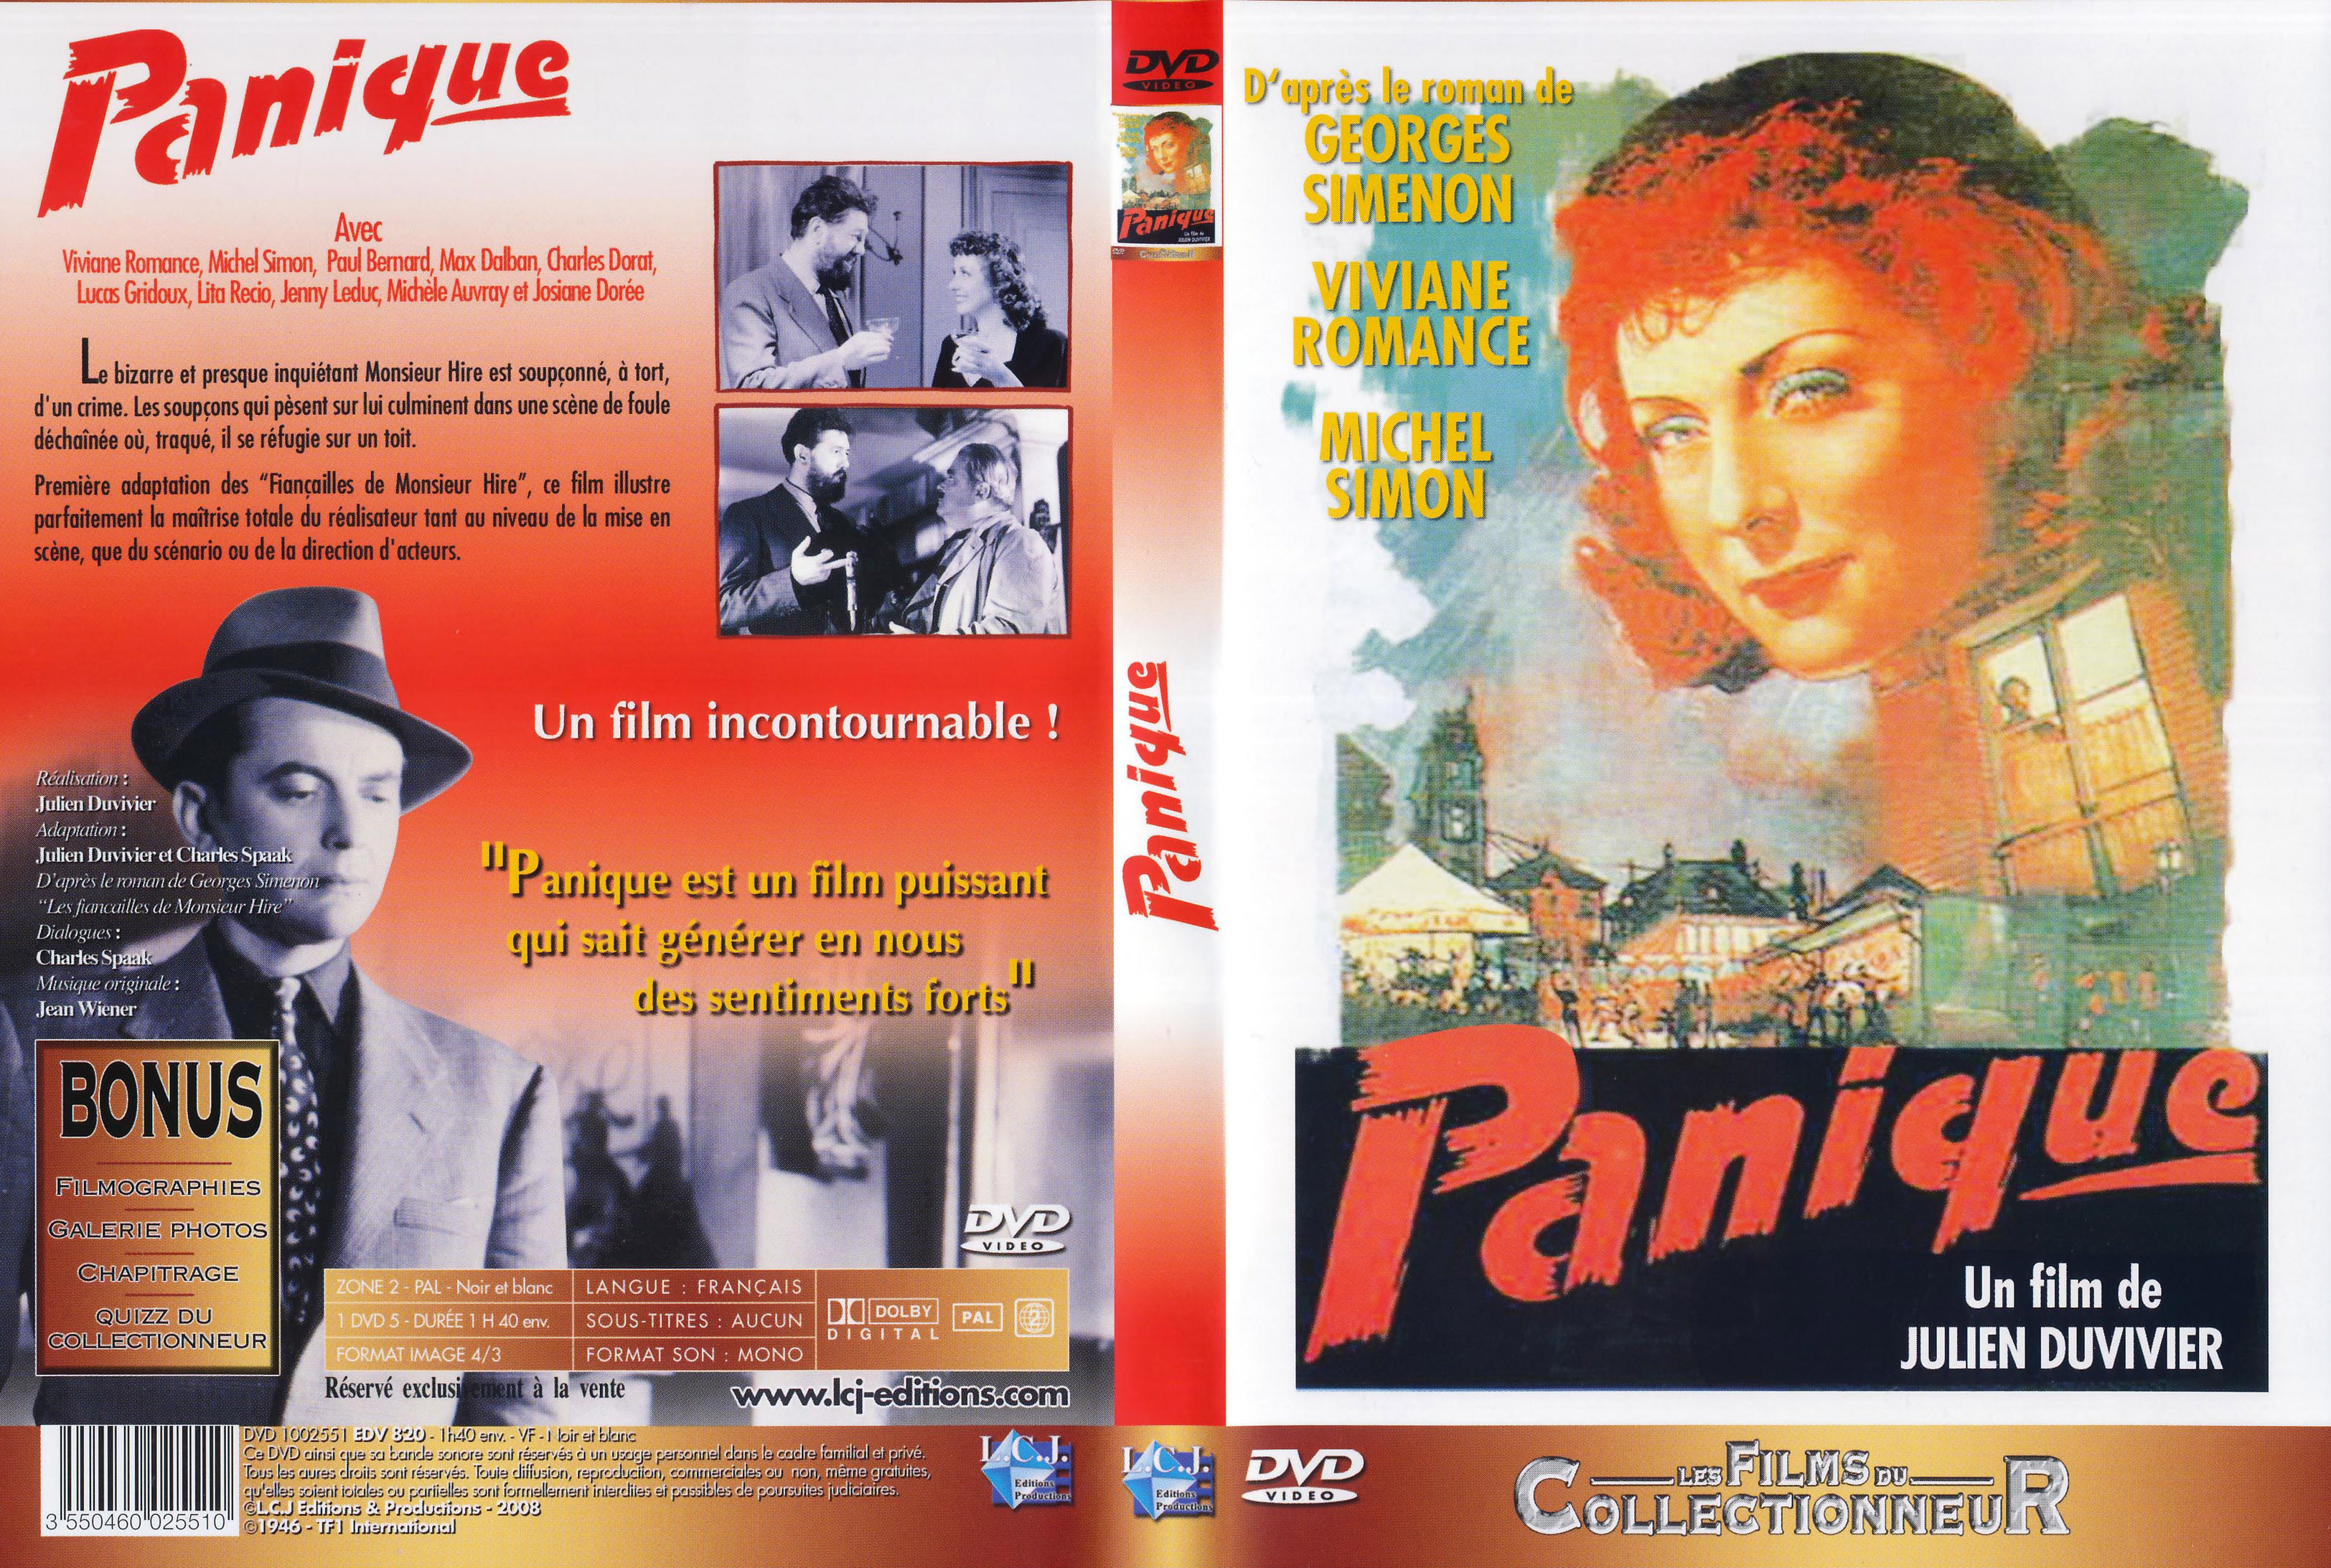 Jaquette DVD Panique